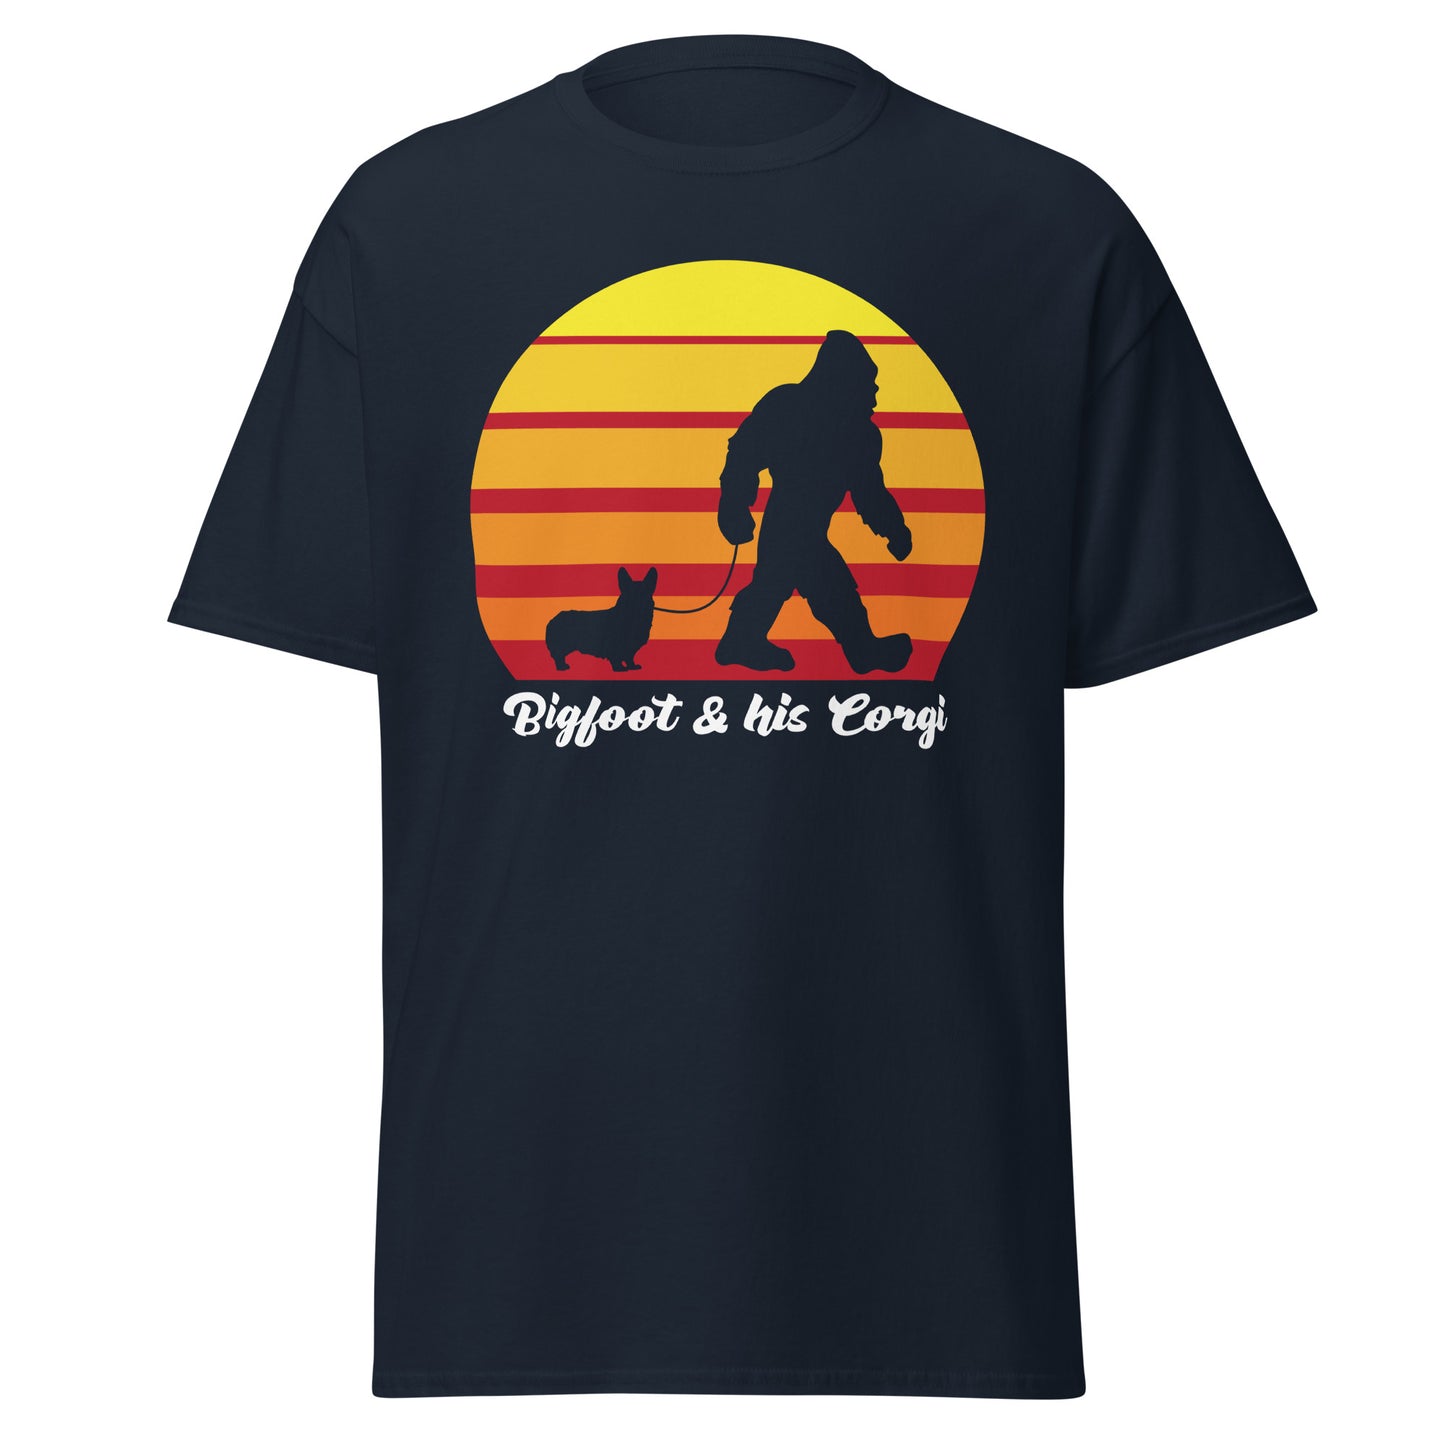 Big foot and his Corgi men’s navy t-shirt by Dog Artistry.